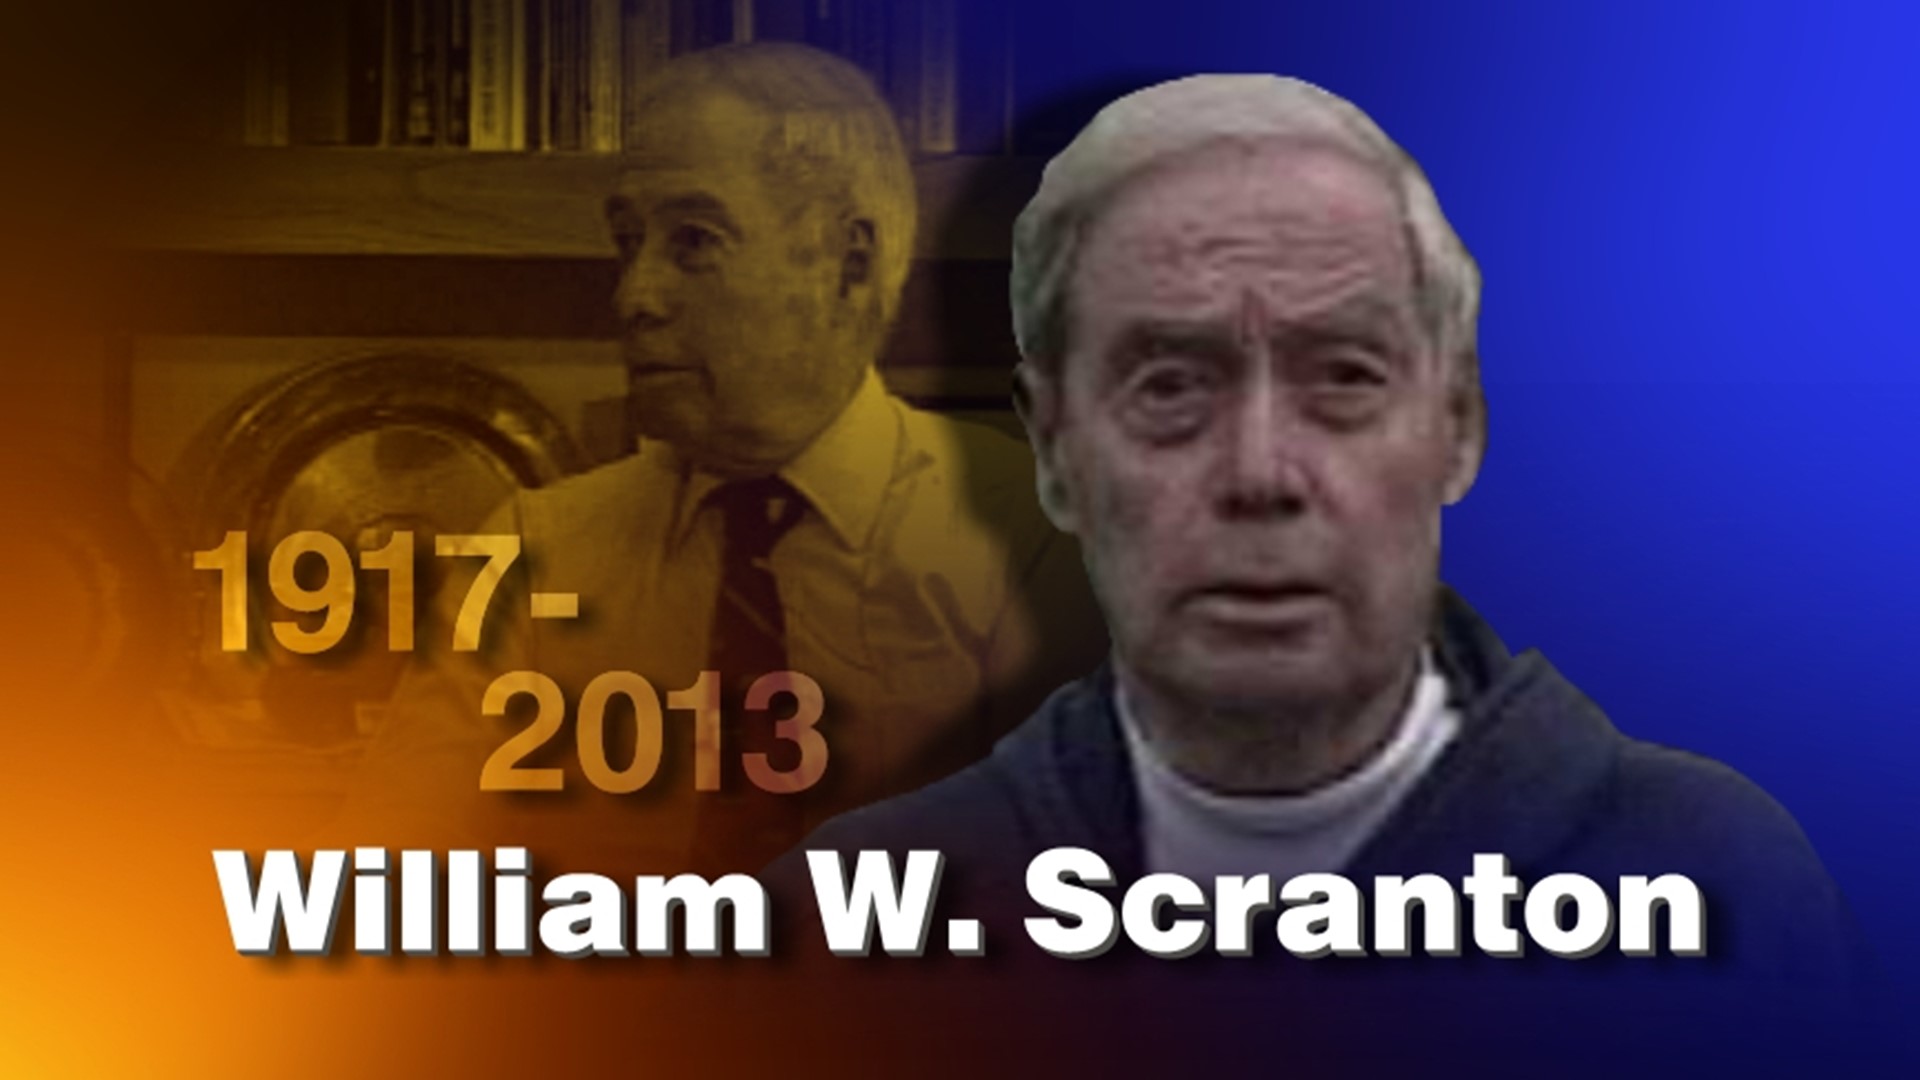 William W. Scranton